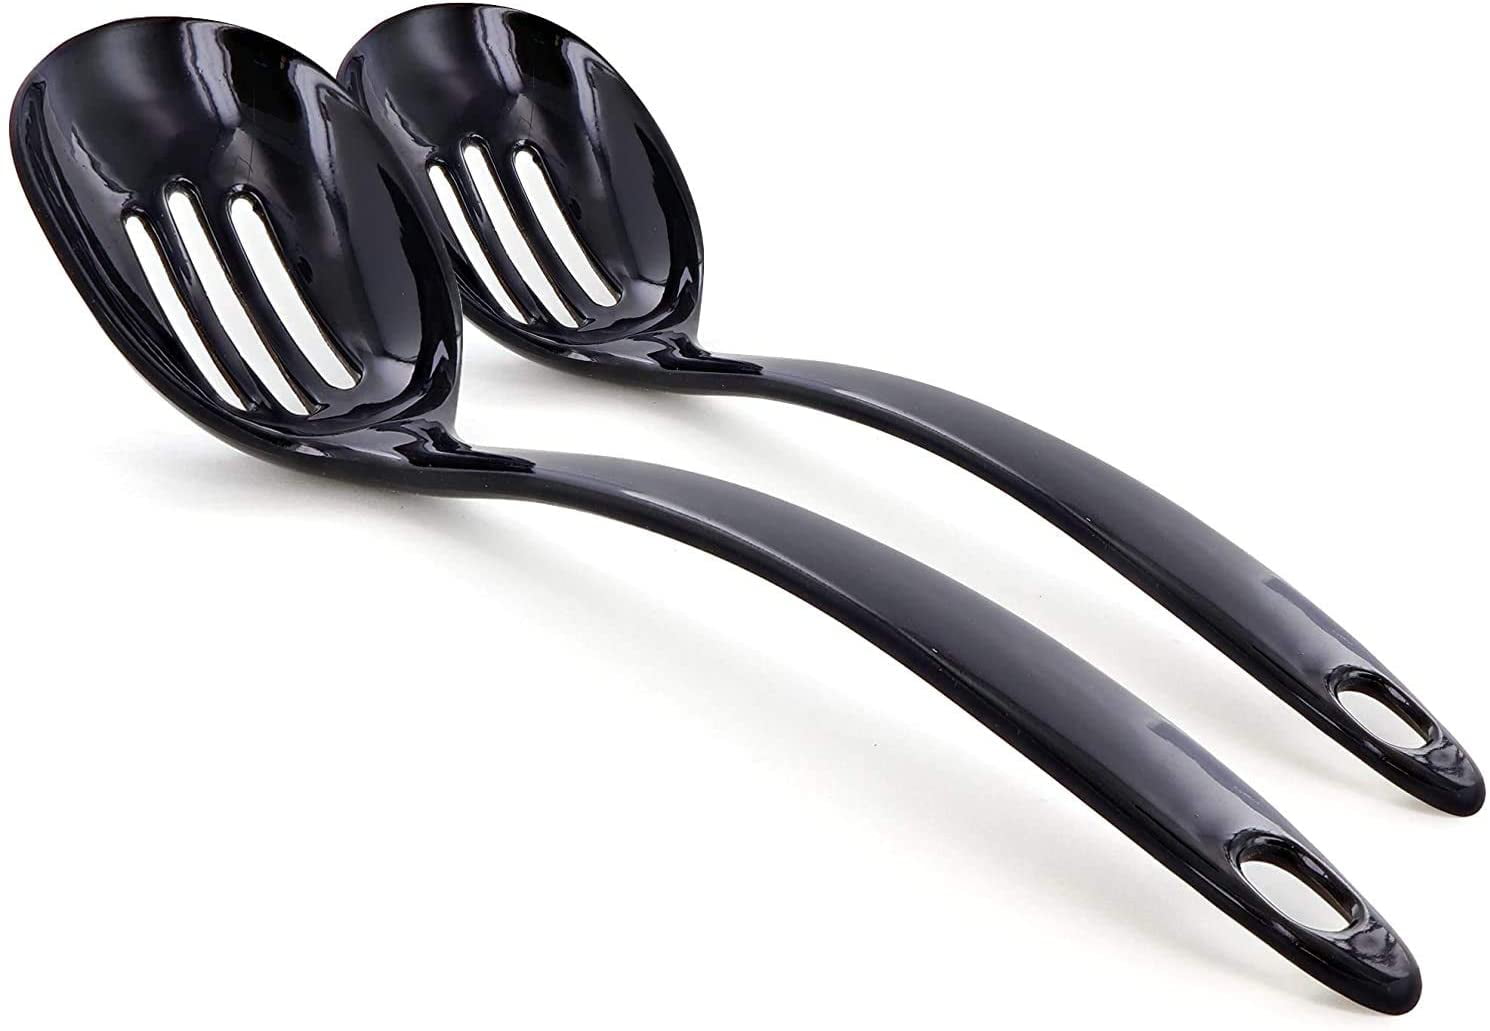 Dalebrook Slotted Serving Spoon in Black Made of Melamine Dishwasher Safe 255mm 